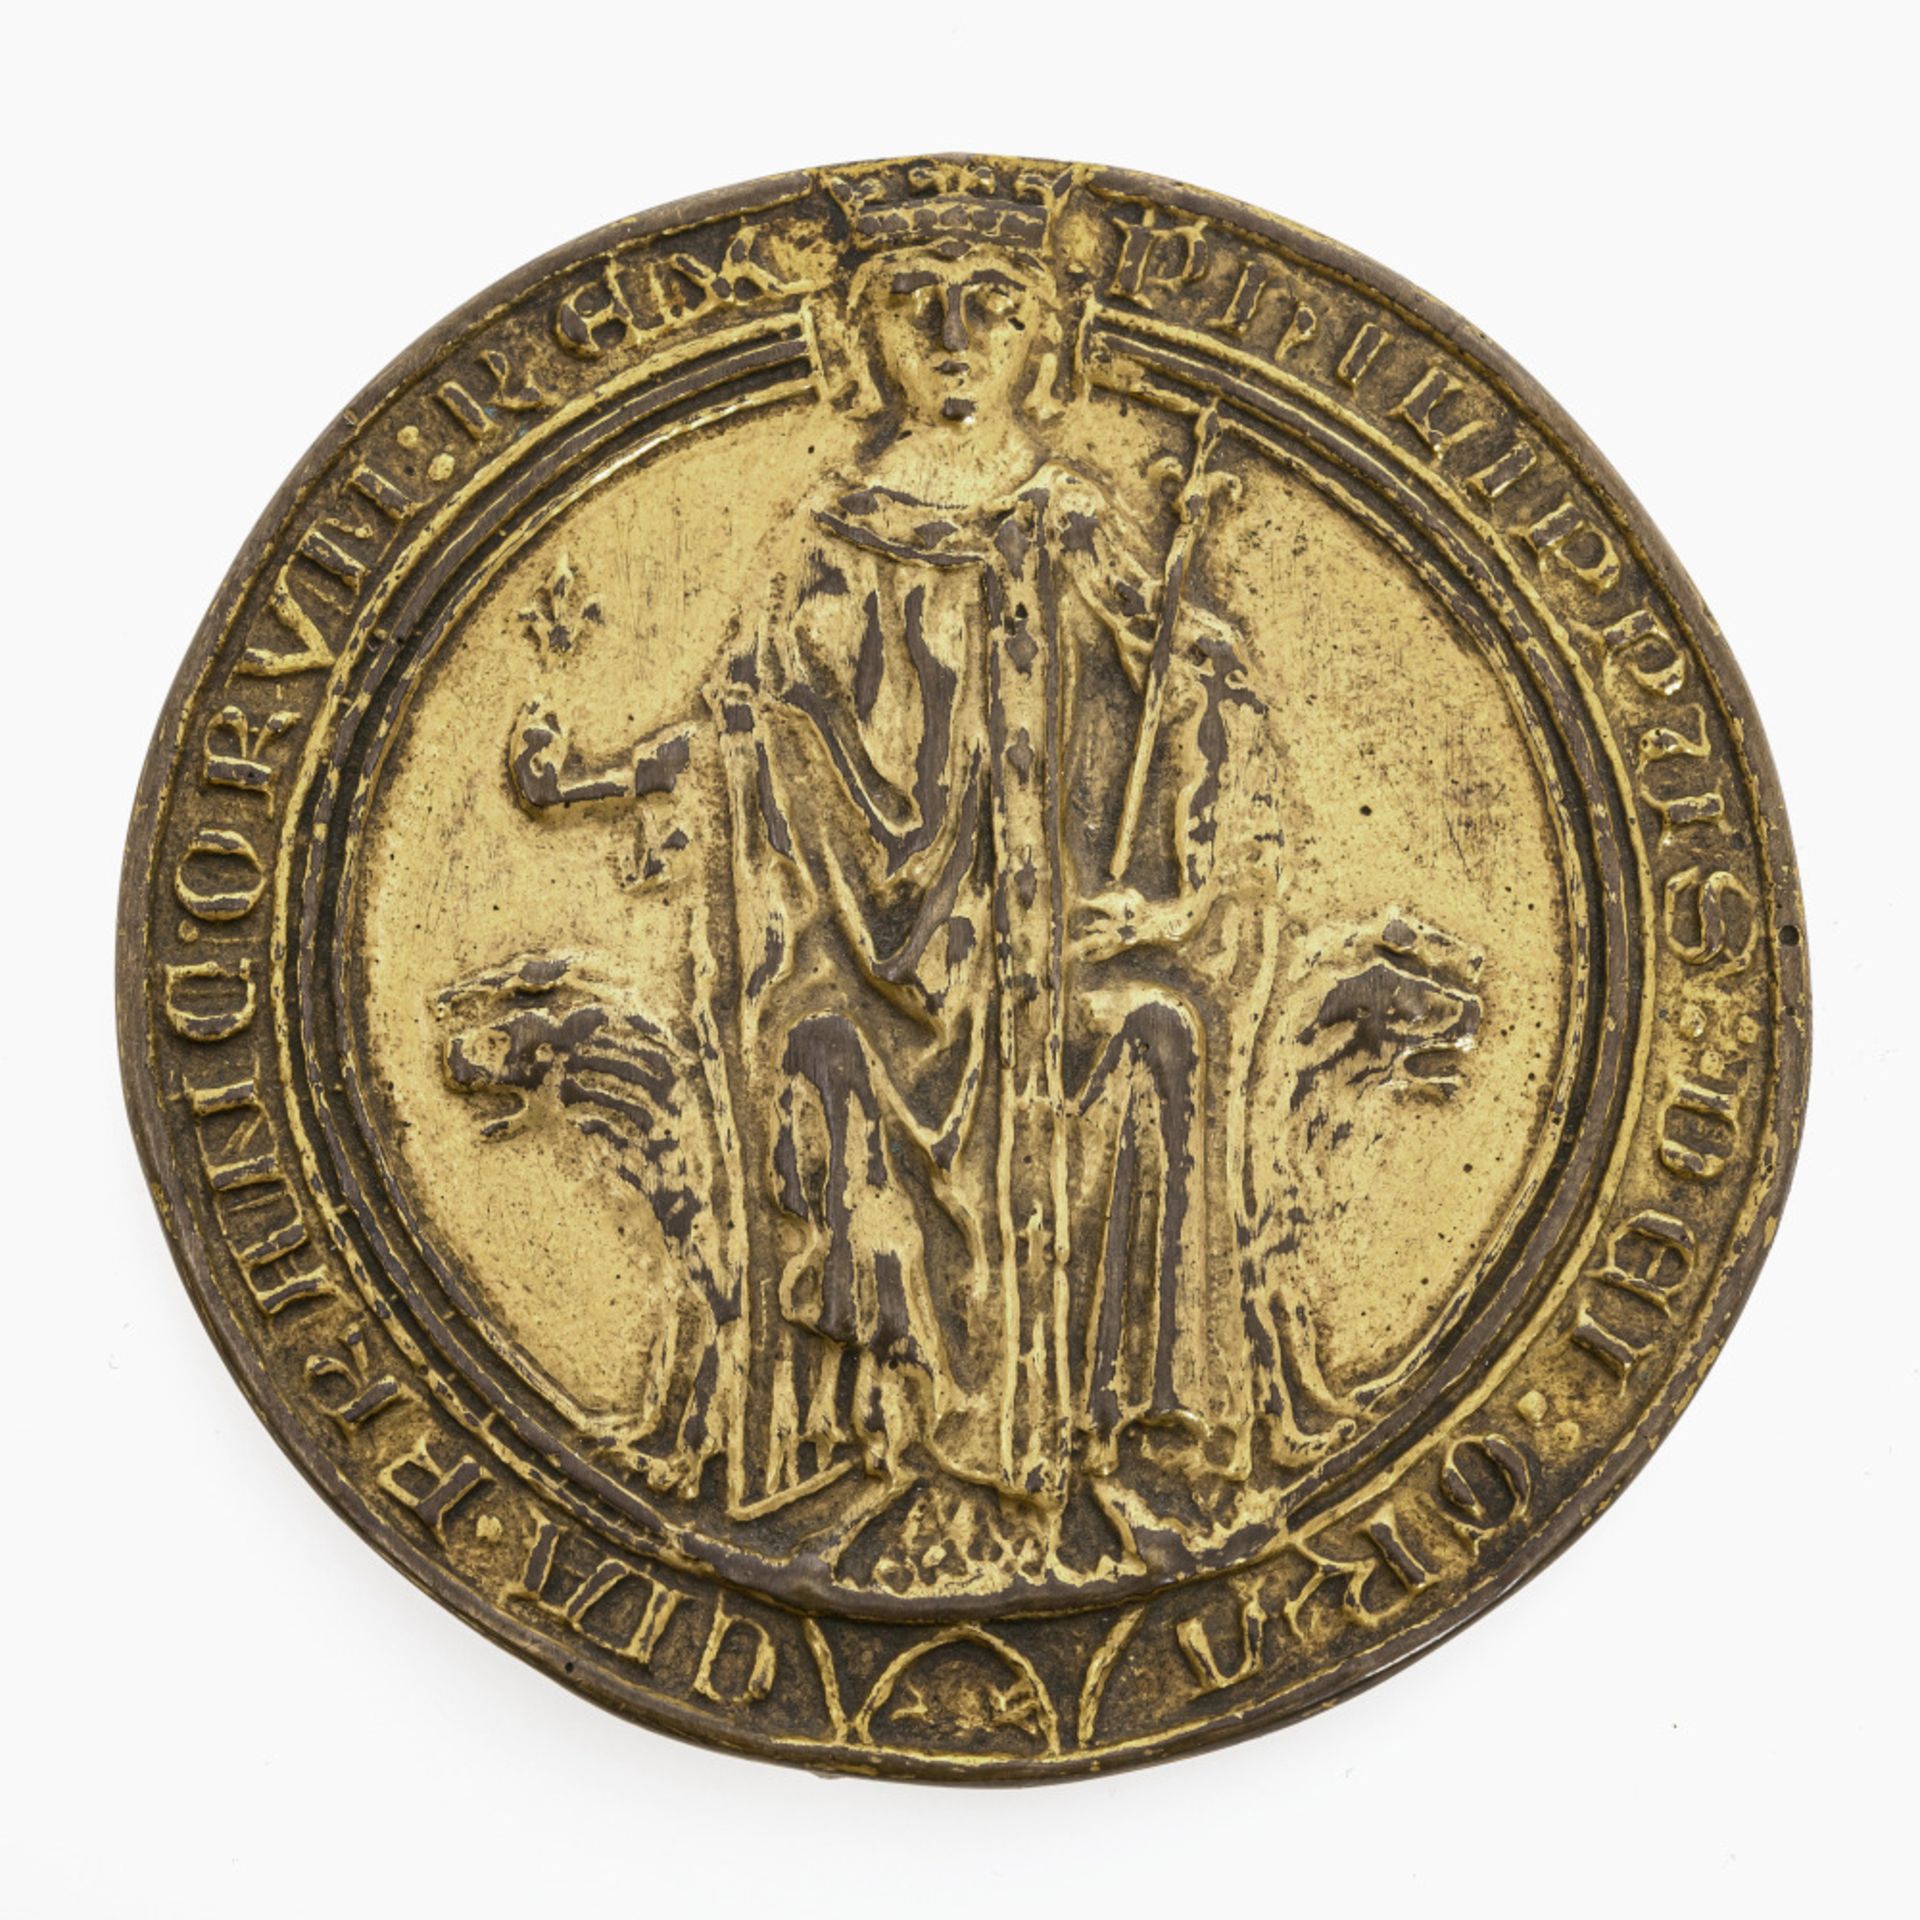 Siegel Philipp des Schönen (1268 - 1314), König von Frankreich - Frankreich